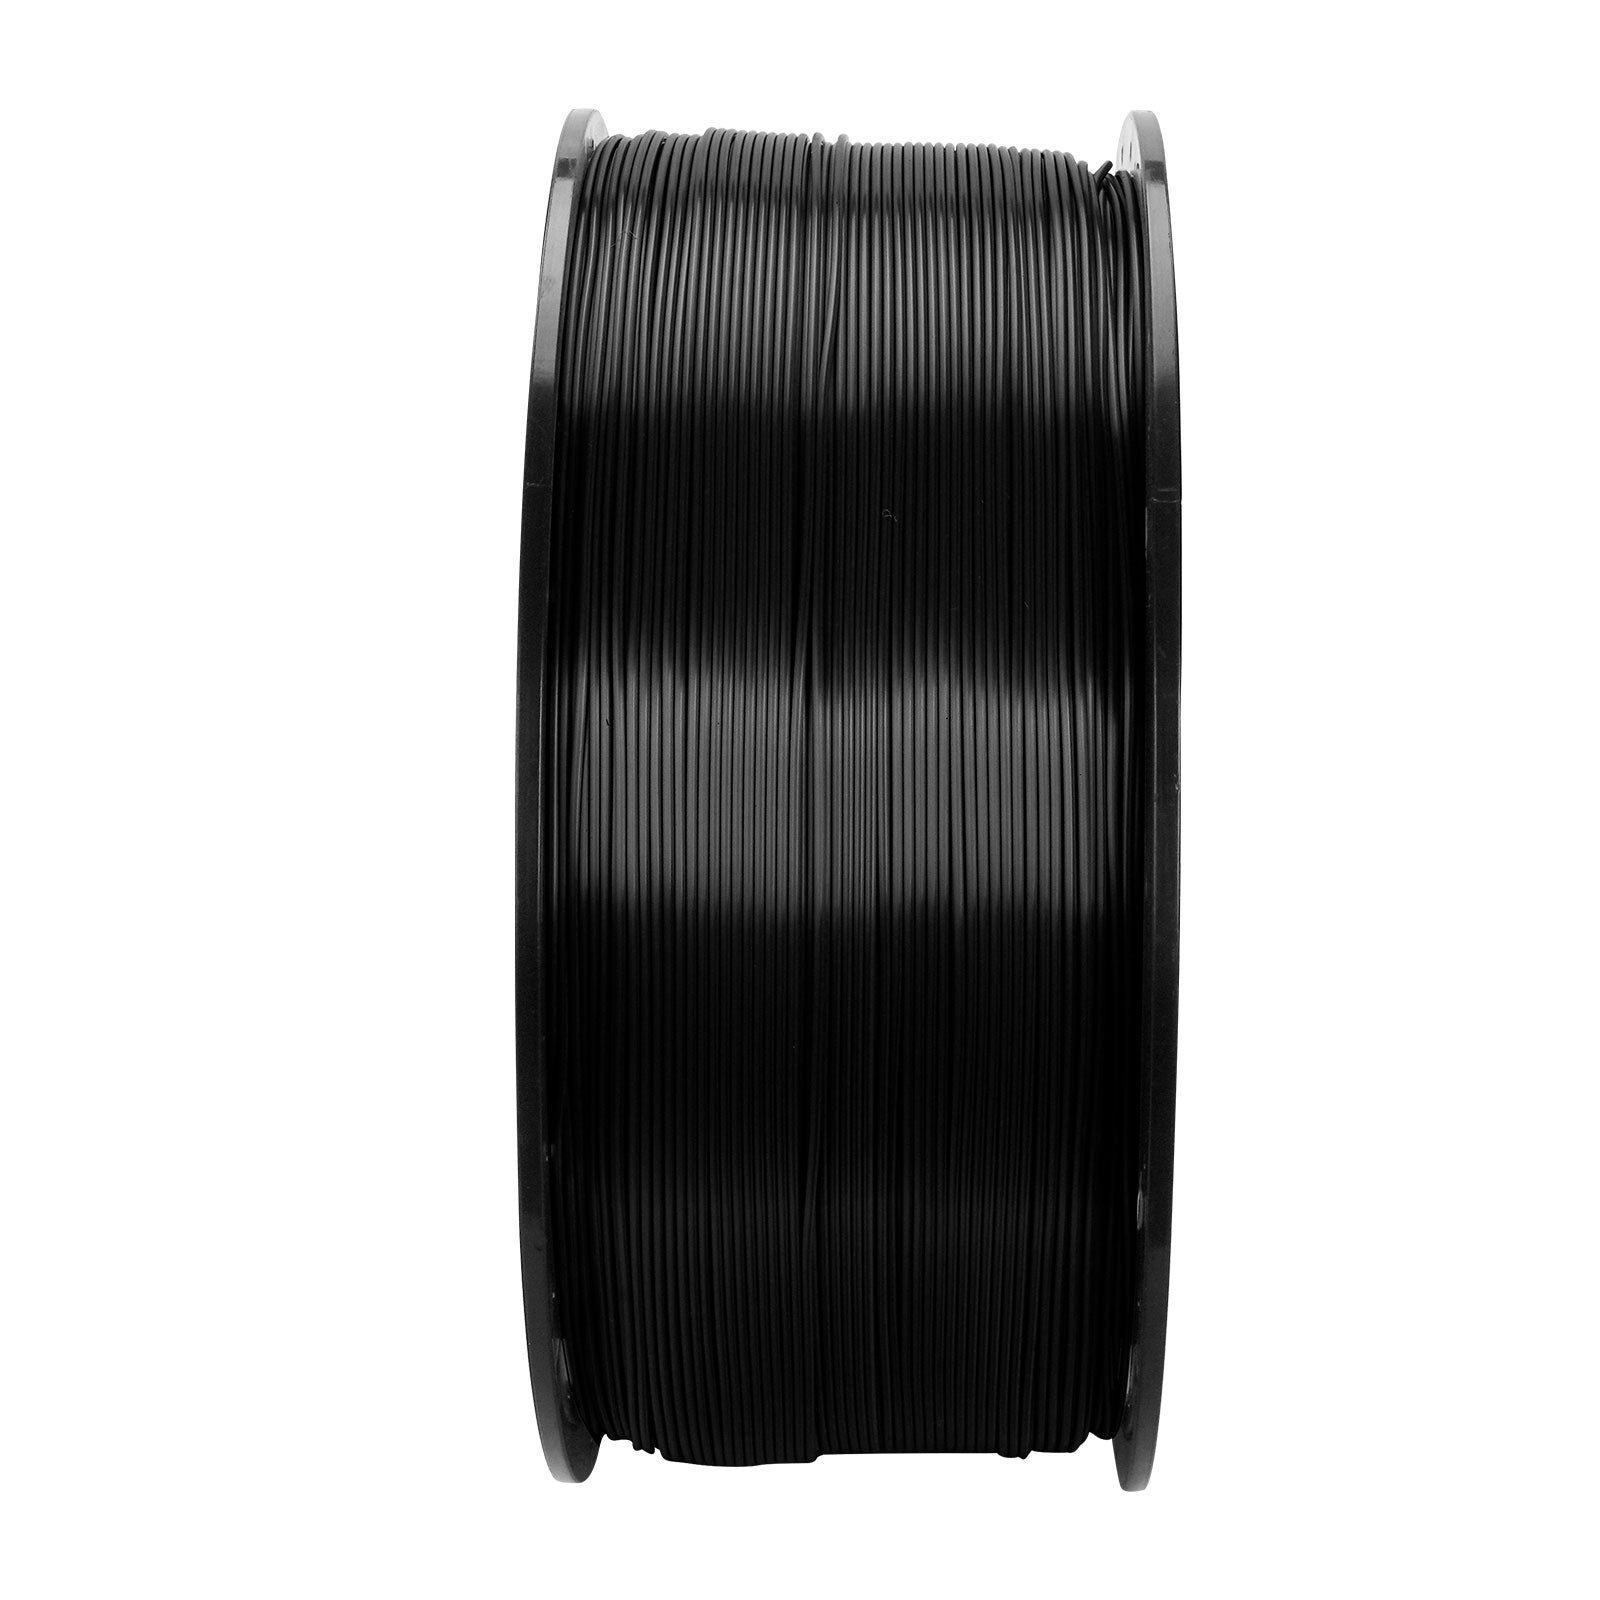 ERYONE PETG Filament, 1.75mm ±0.03mm Filament For 3D Printer, 3KG/Spool